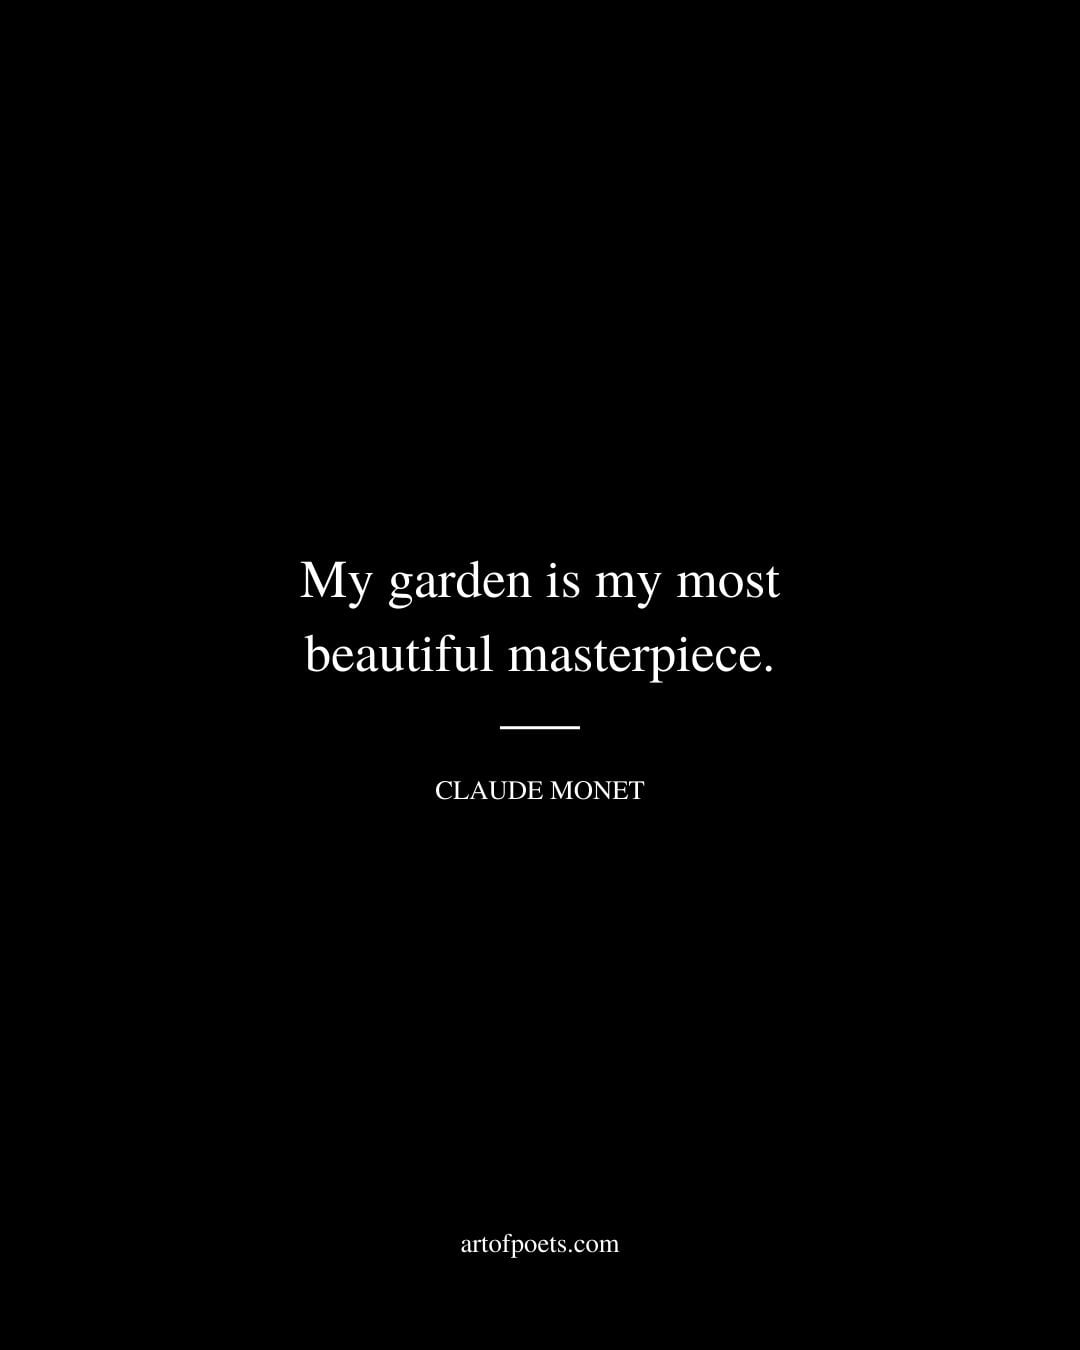 My garden is my most beautiful masterpiece. Claude Monet